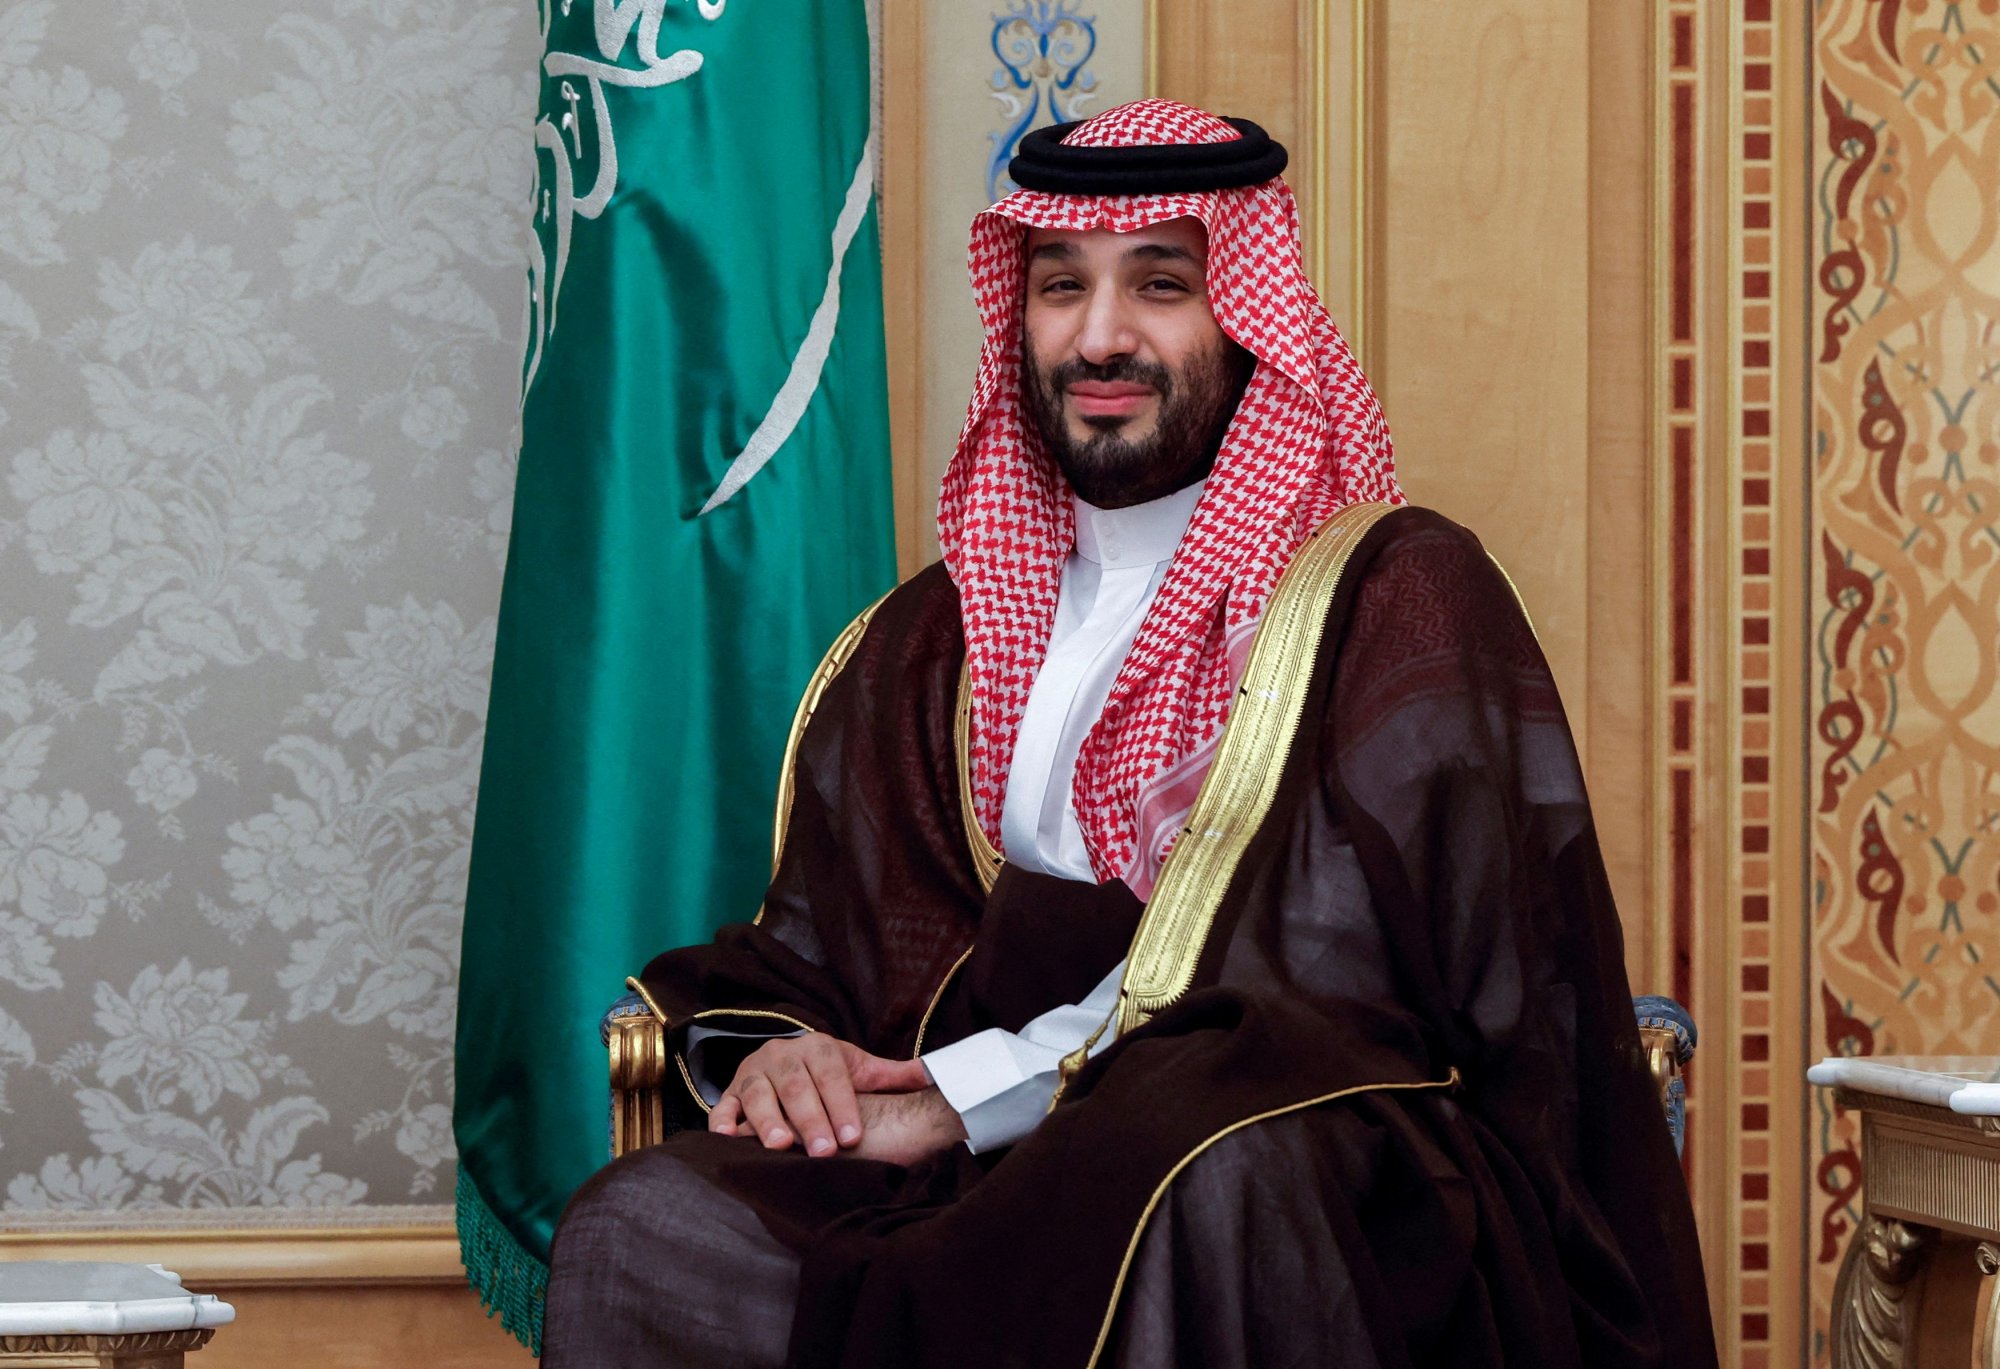 Σαουδική Αραβία: Ο πρίγκιπας-διάδοχος αναβάλλει την επίσκεψή του στην Ιαπωνία λόγω της υγείας του βασιλιά